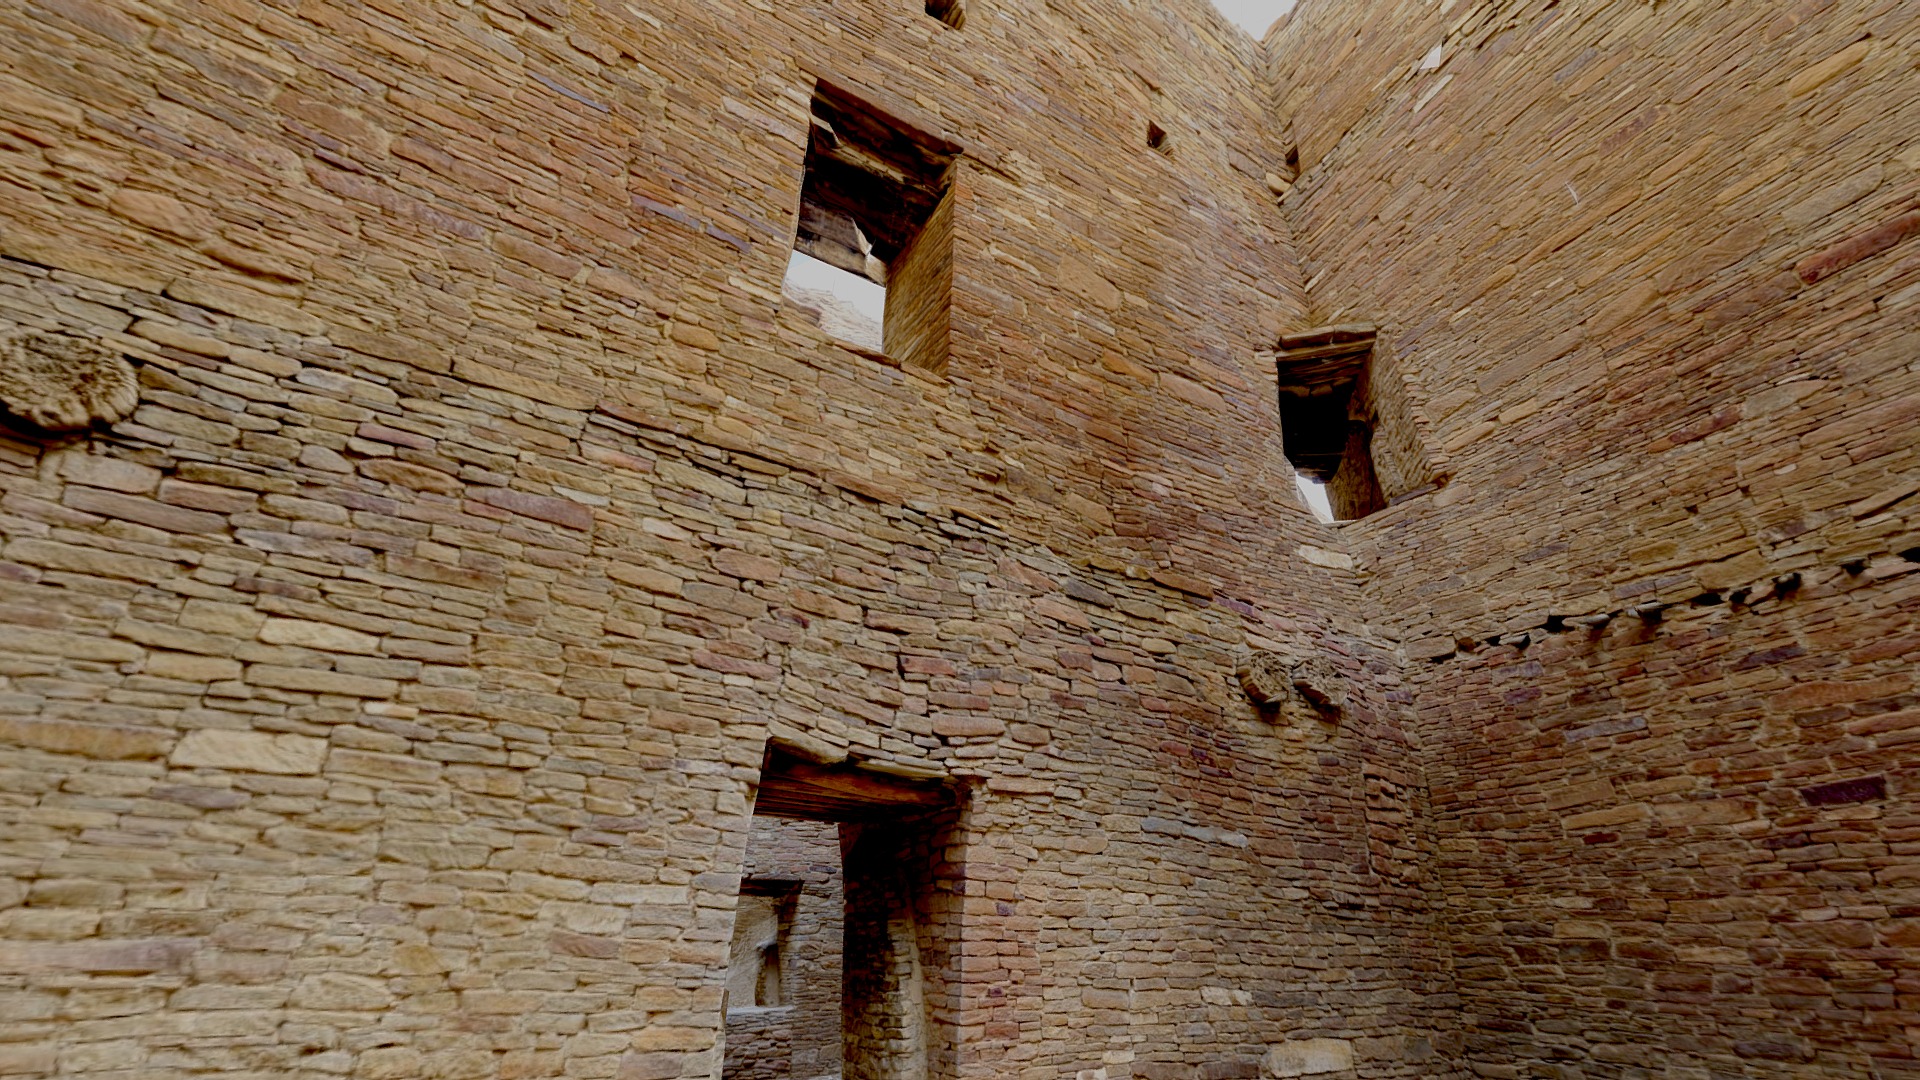 3D model Pueblo Bonita Rooms, Chaco Canyon New Mexico - This is a 3D model of the Pueblo Bonita Rooms, Chaco Canyon New Mexico. The 3D model is about a brick building with windows.